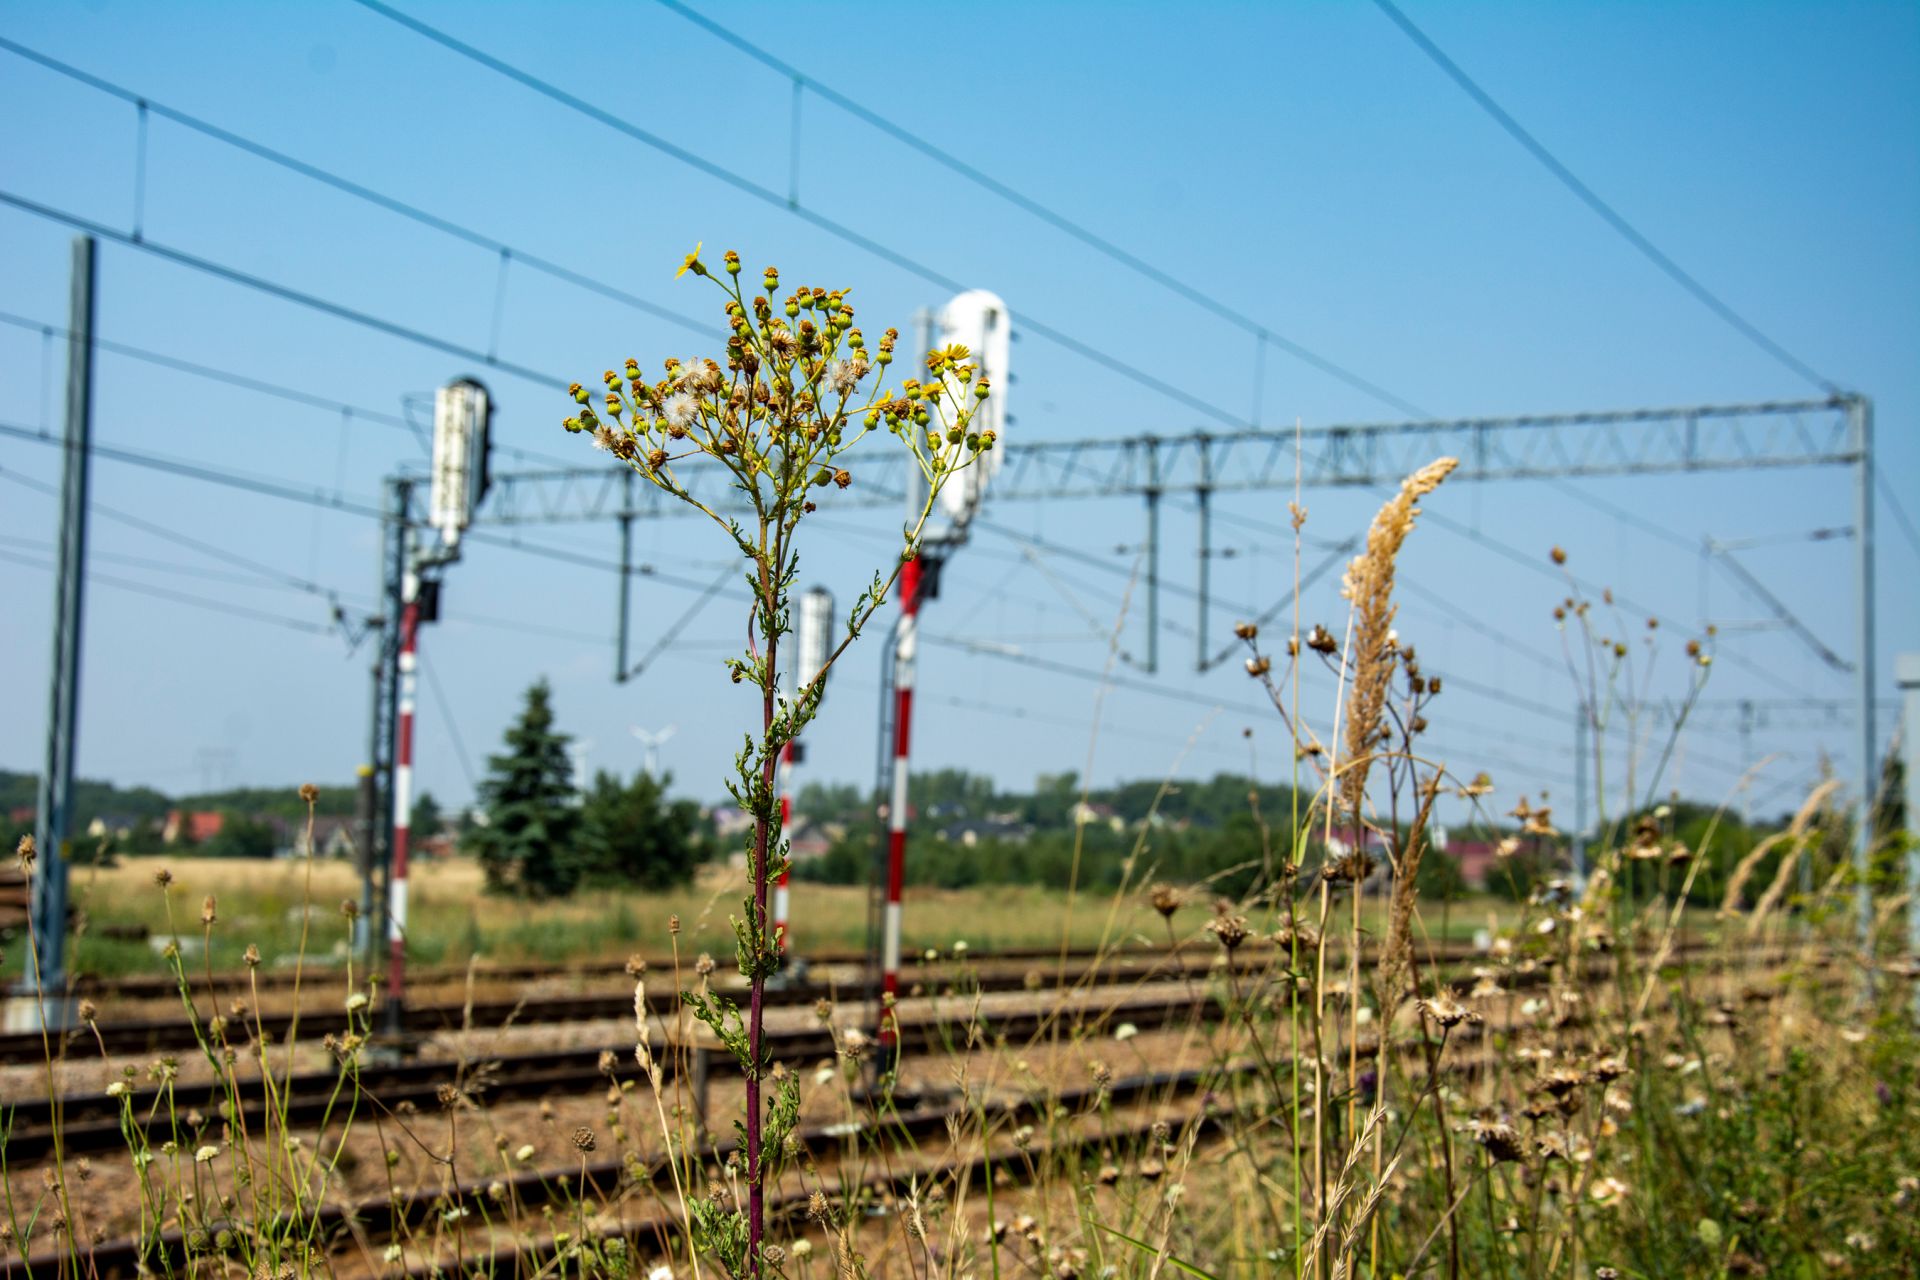 Przebudowa infrastruktury kolejowej na linii nr 61 odcinek Koniecpol - Turów w ramach zadania "Rewitalizacja toru nr 1 linii kolejowej nr 61"